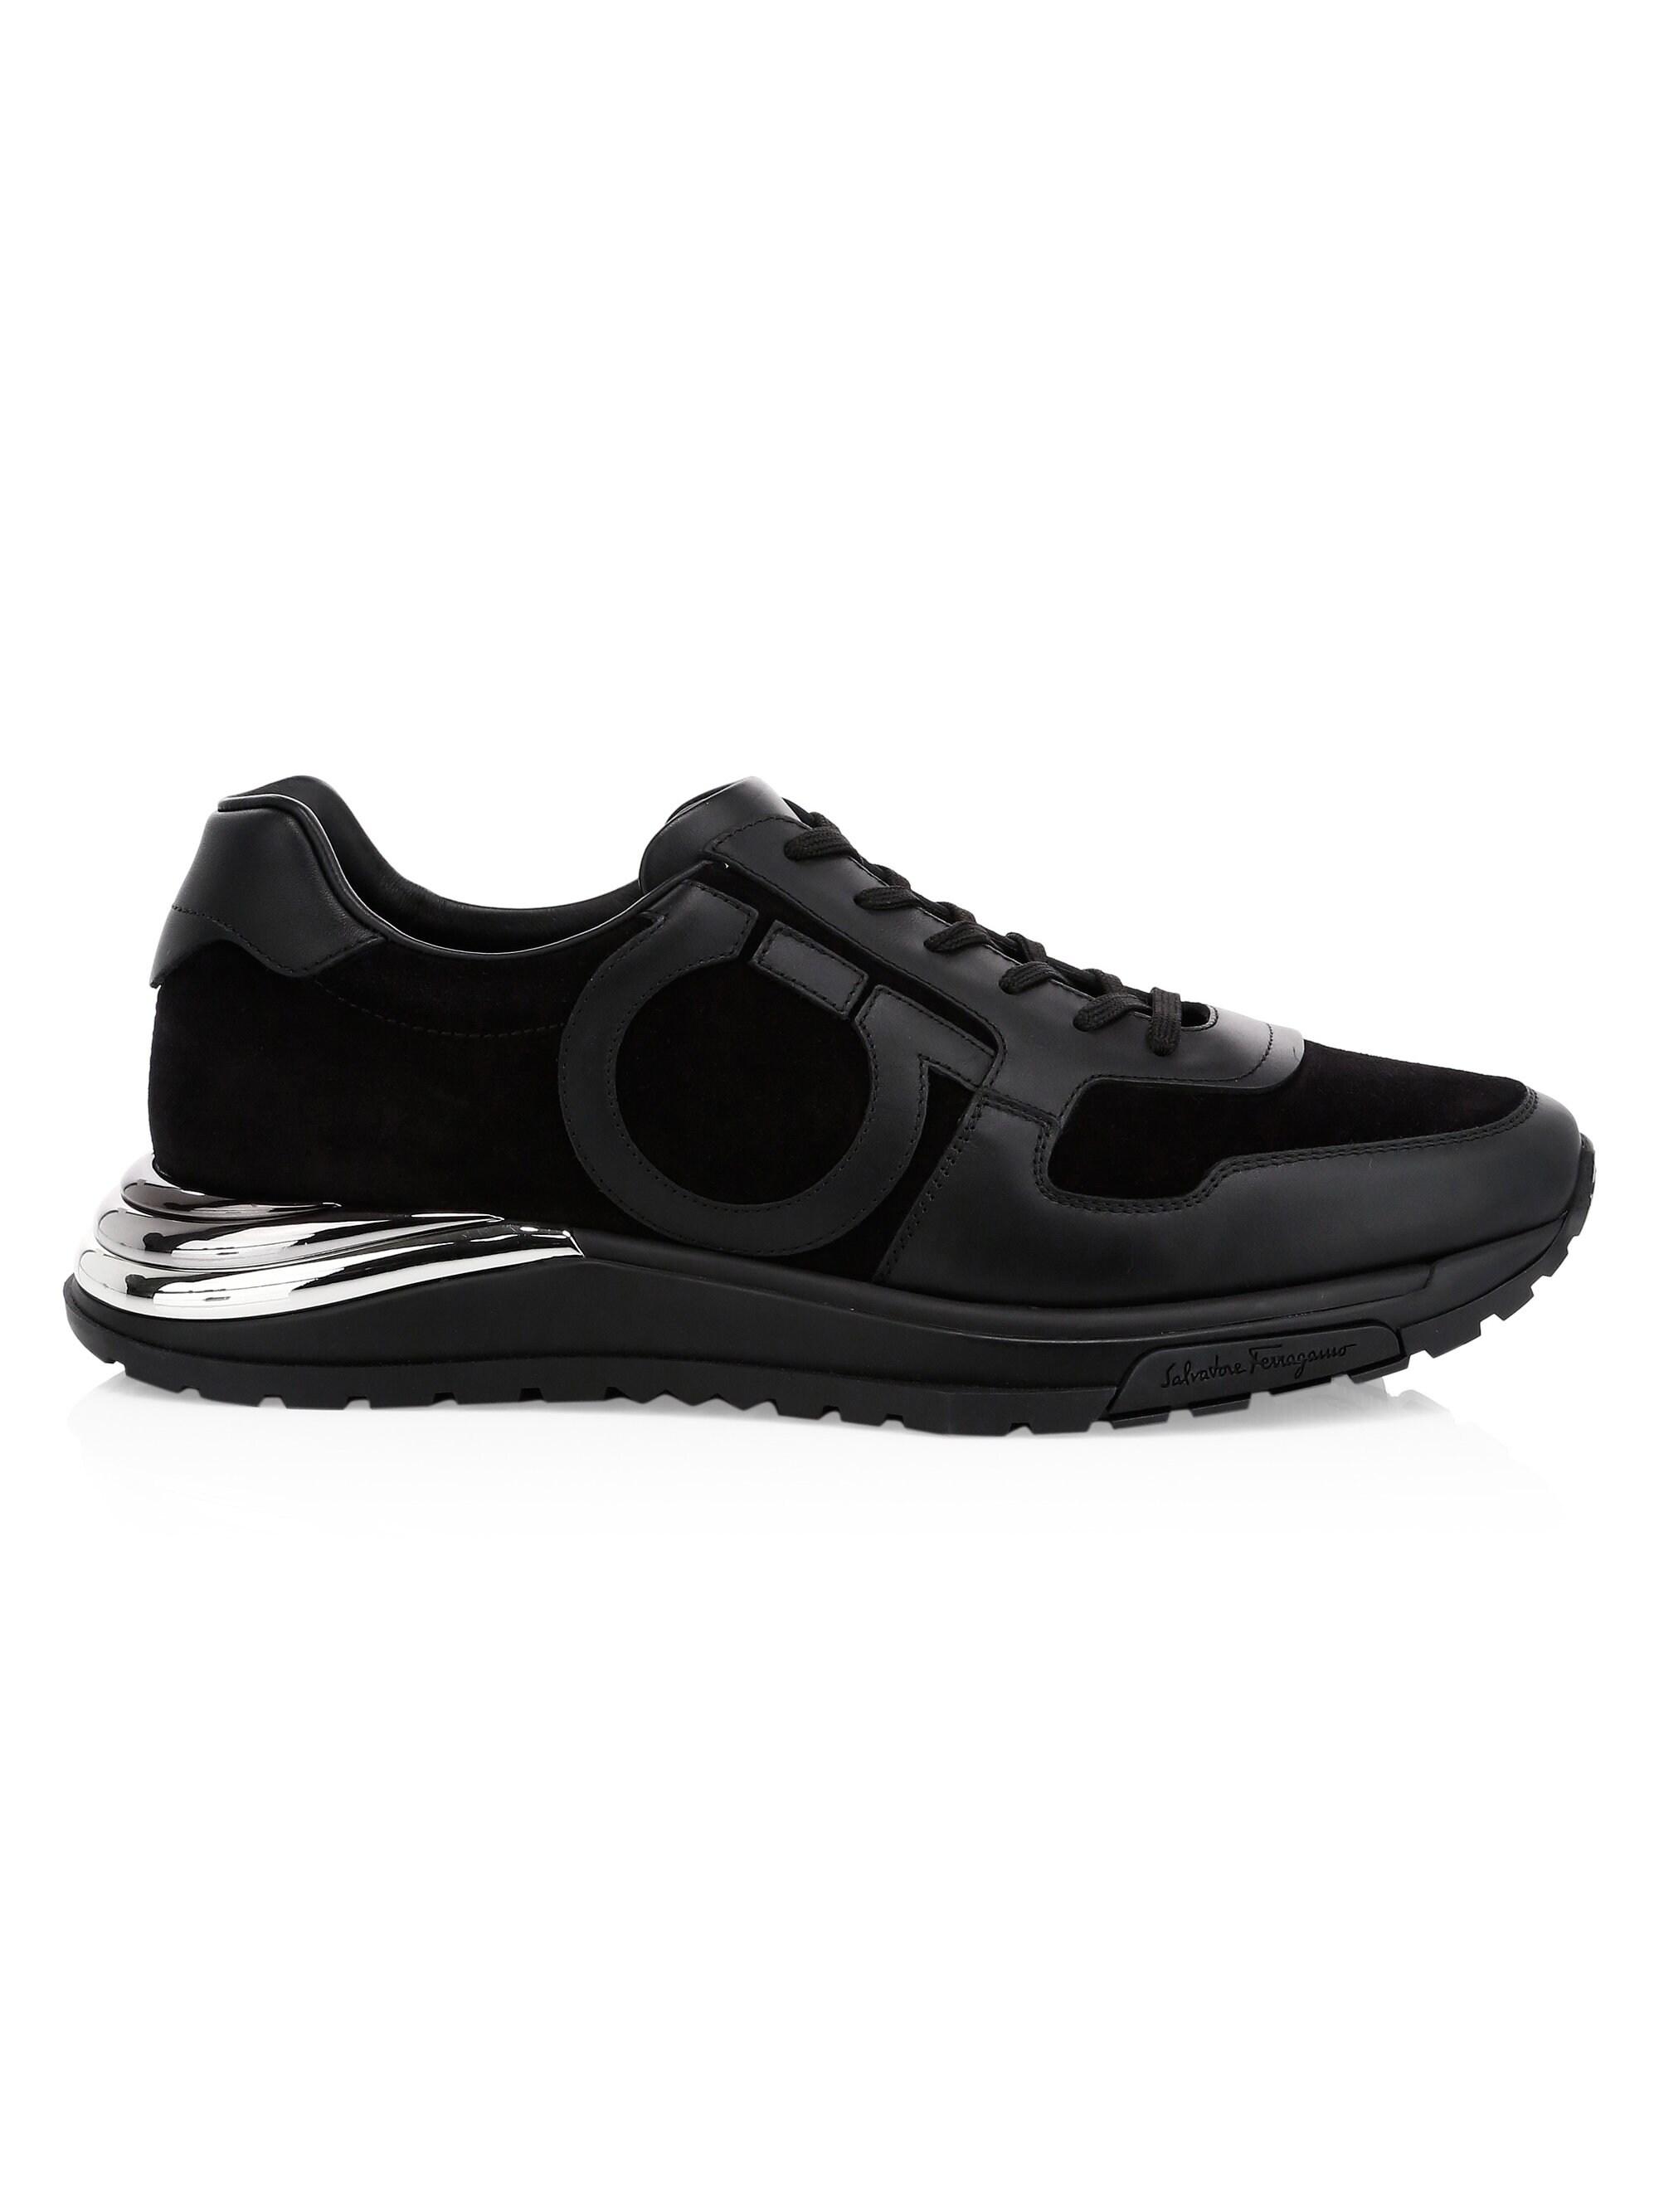 Ferragamo Brooklyn Swilly Suede & Leather Sneakers in Black for Men - Lyst